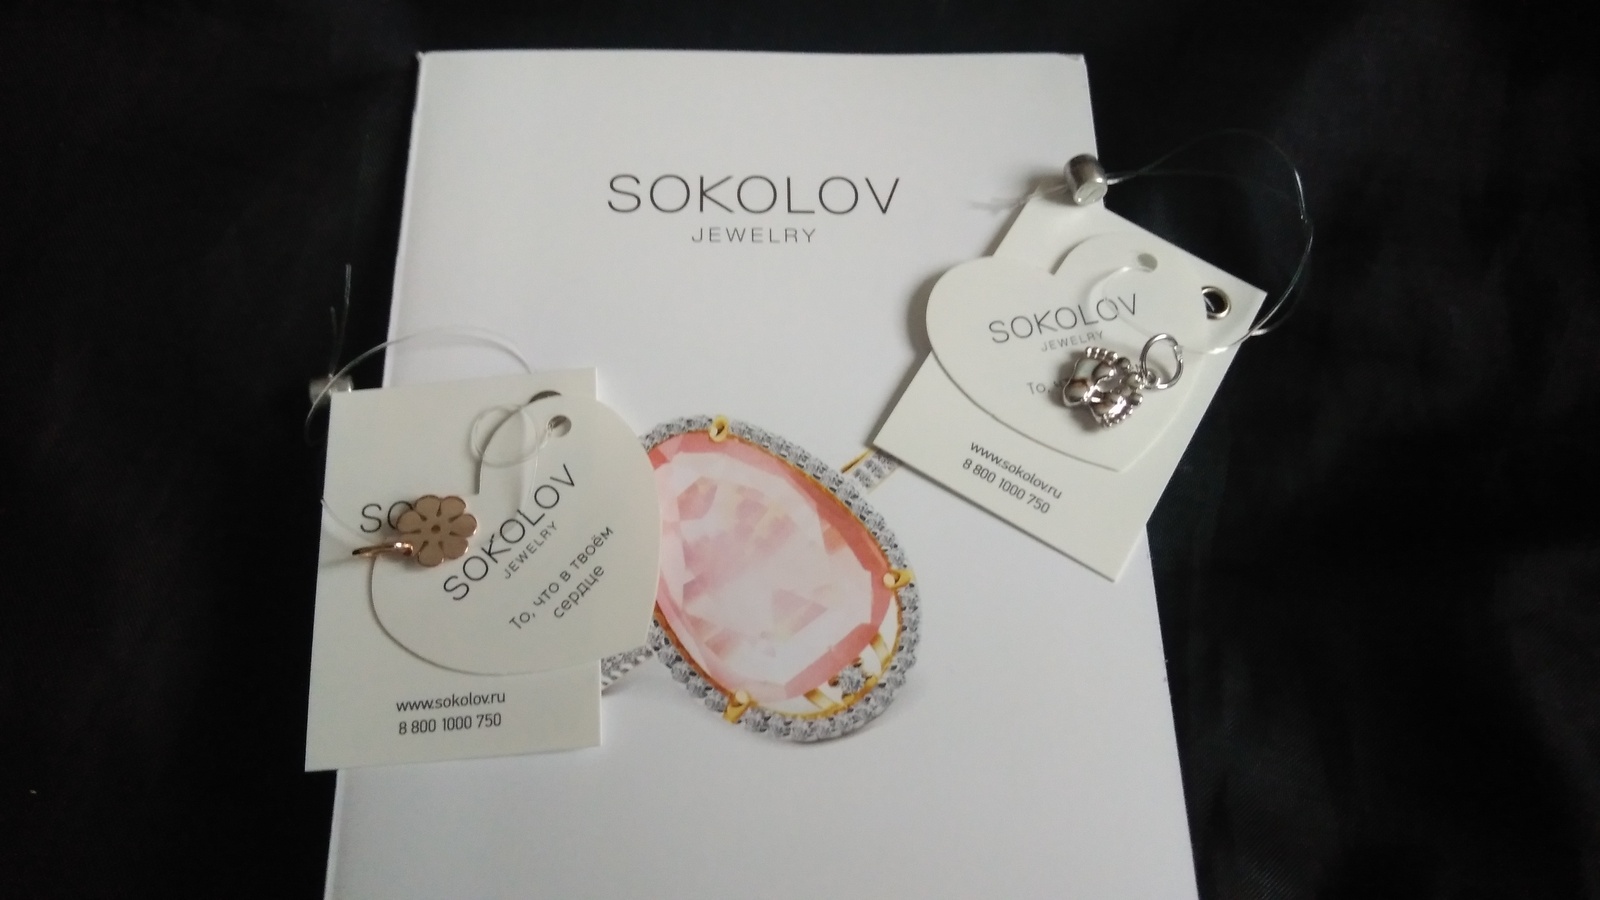 Получить подарок от соколов. Подарок от Соколов. Подарочный сертификат SOKOLOV. Подарочный сертификат на ювелирные изделия SOKOLOV. Серебряная подвеска от SOKOLOV.